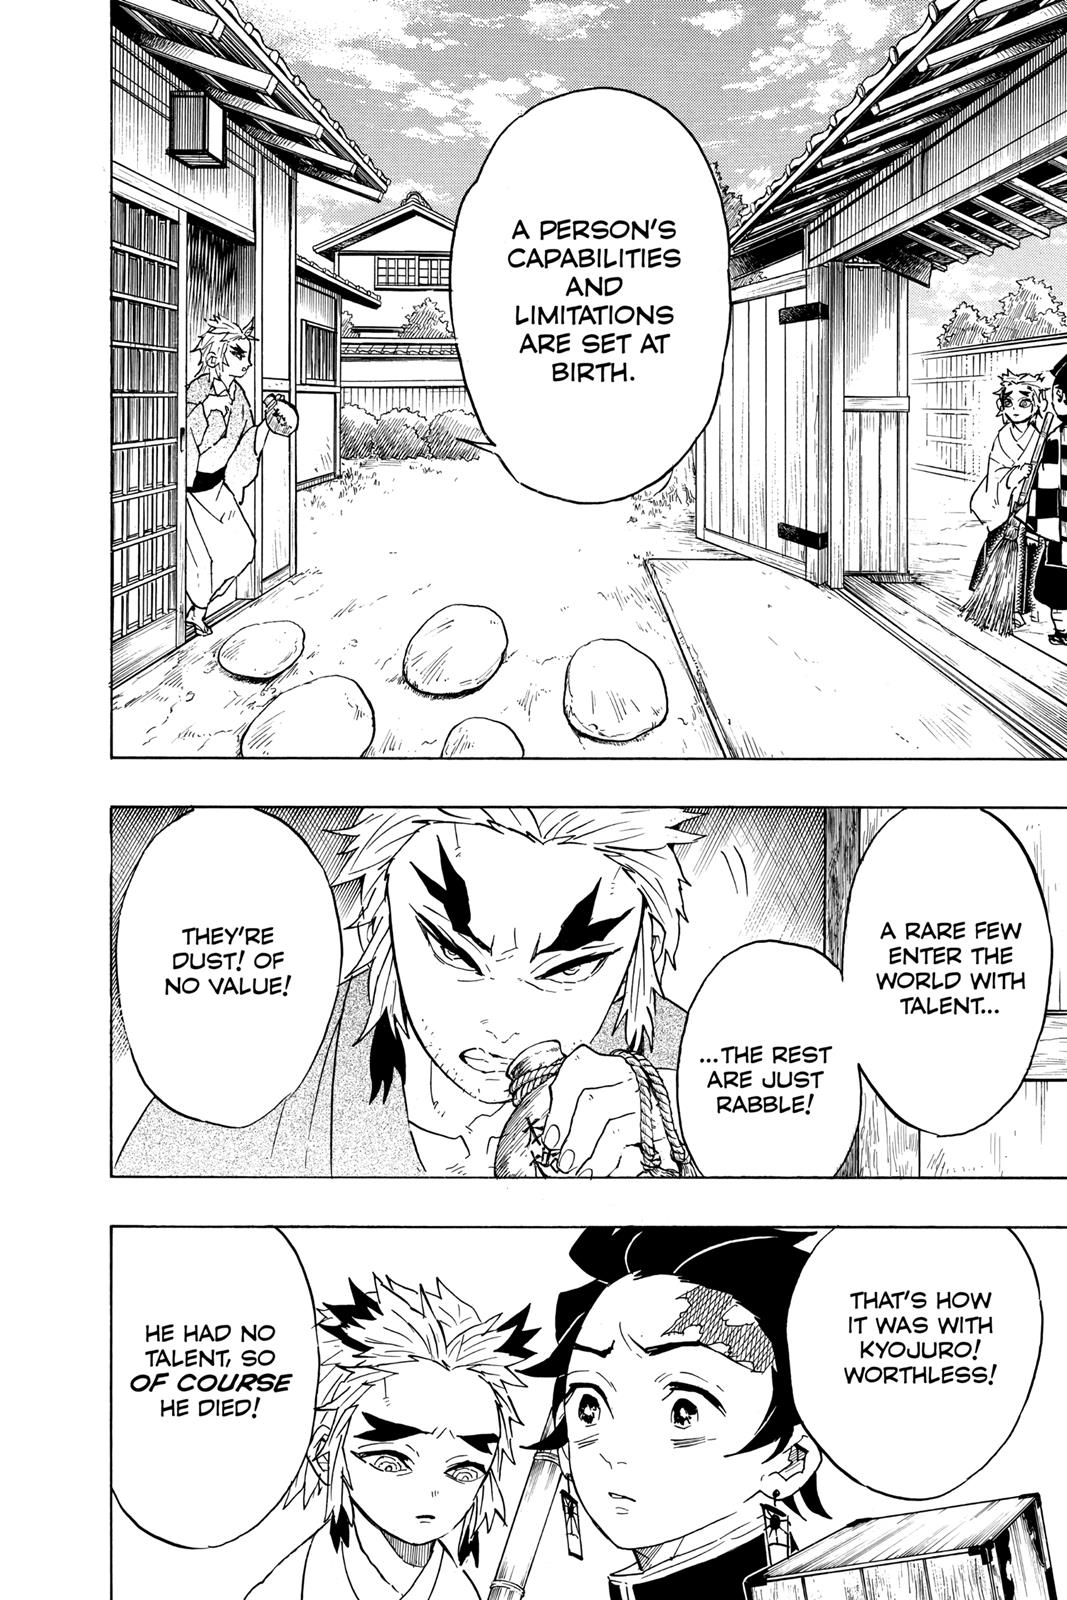 Demon Slayer Manga Manga Chapter - 68 - image 2